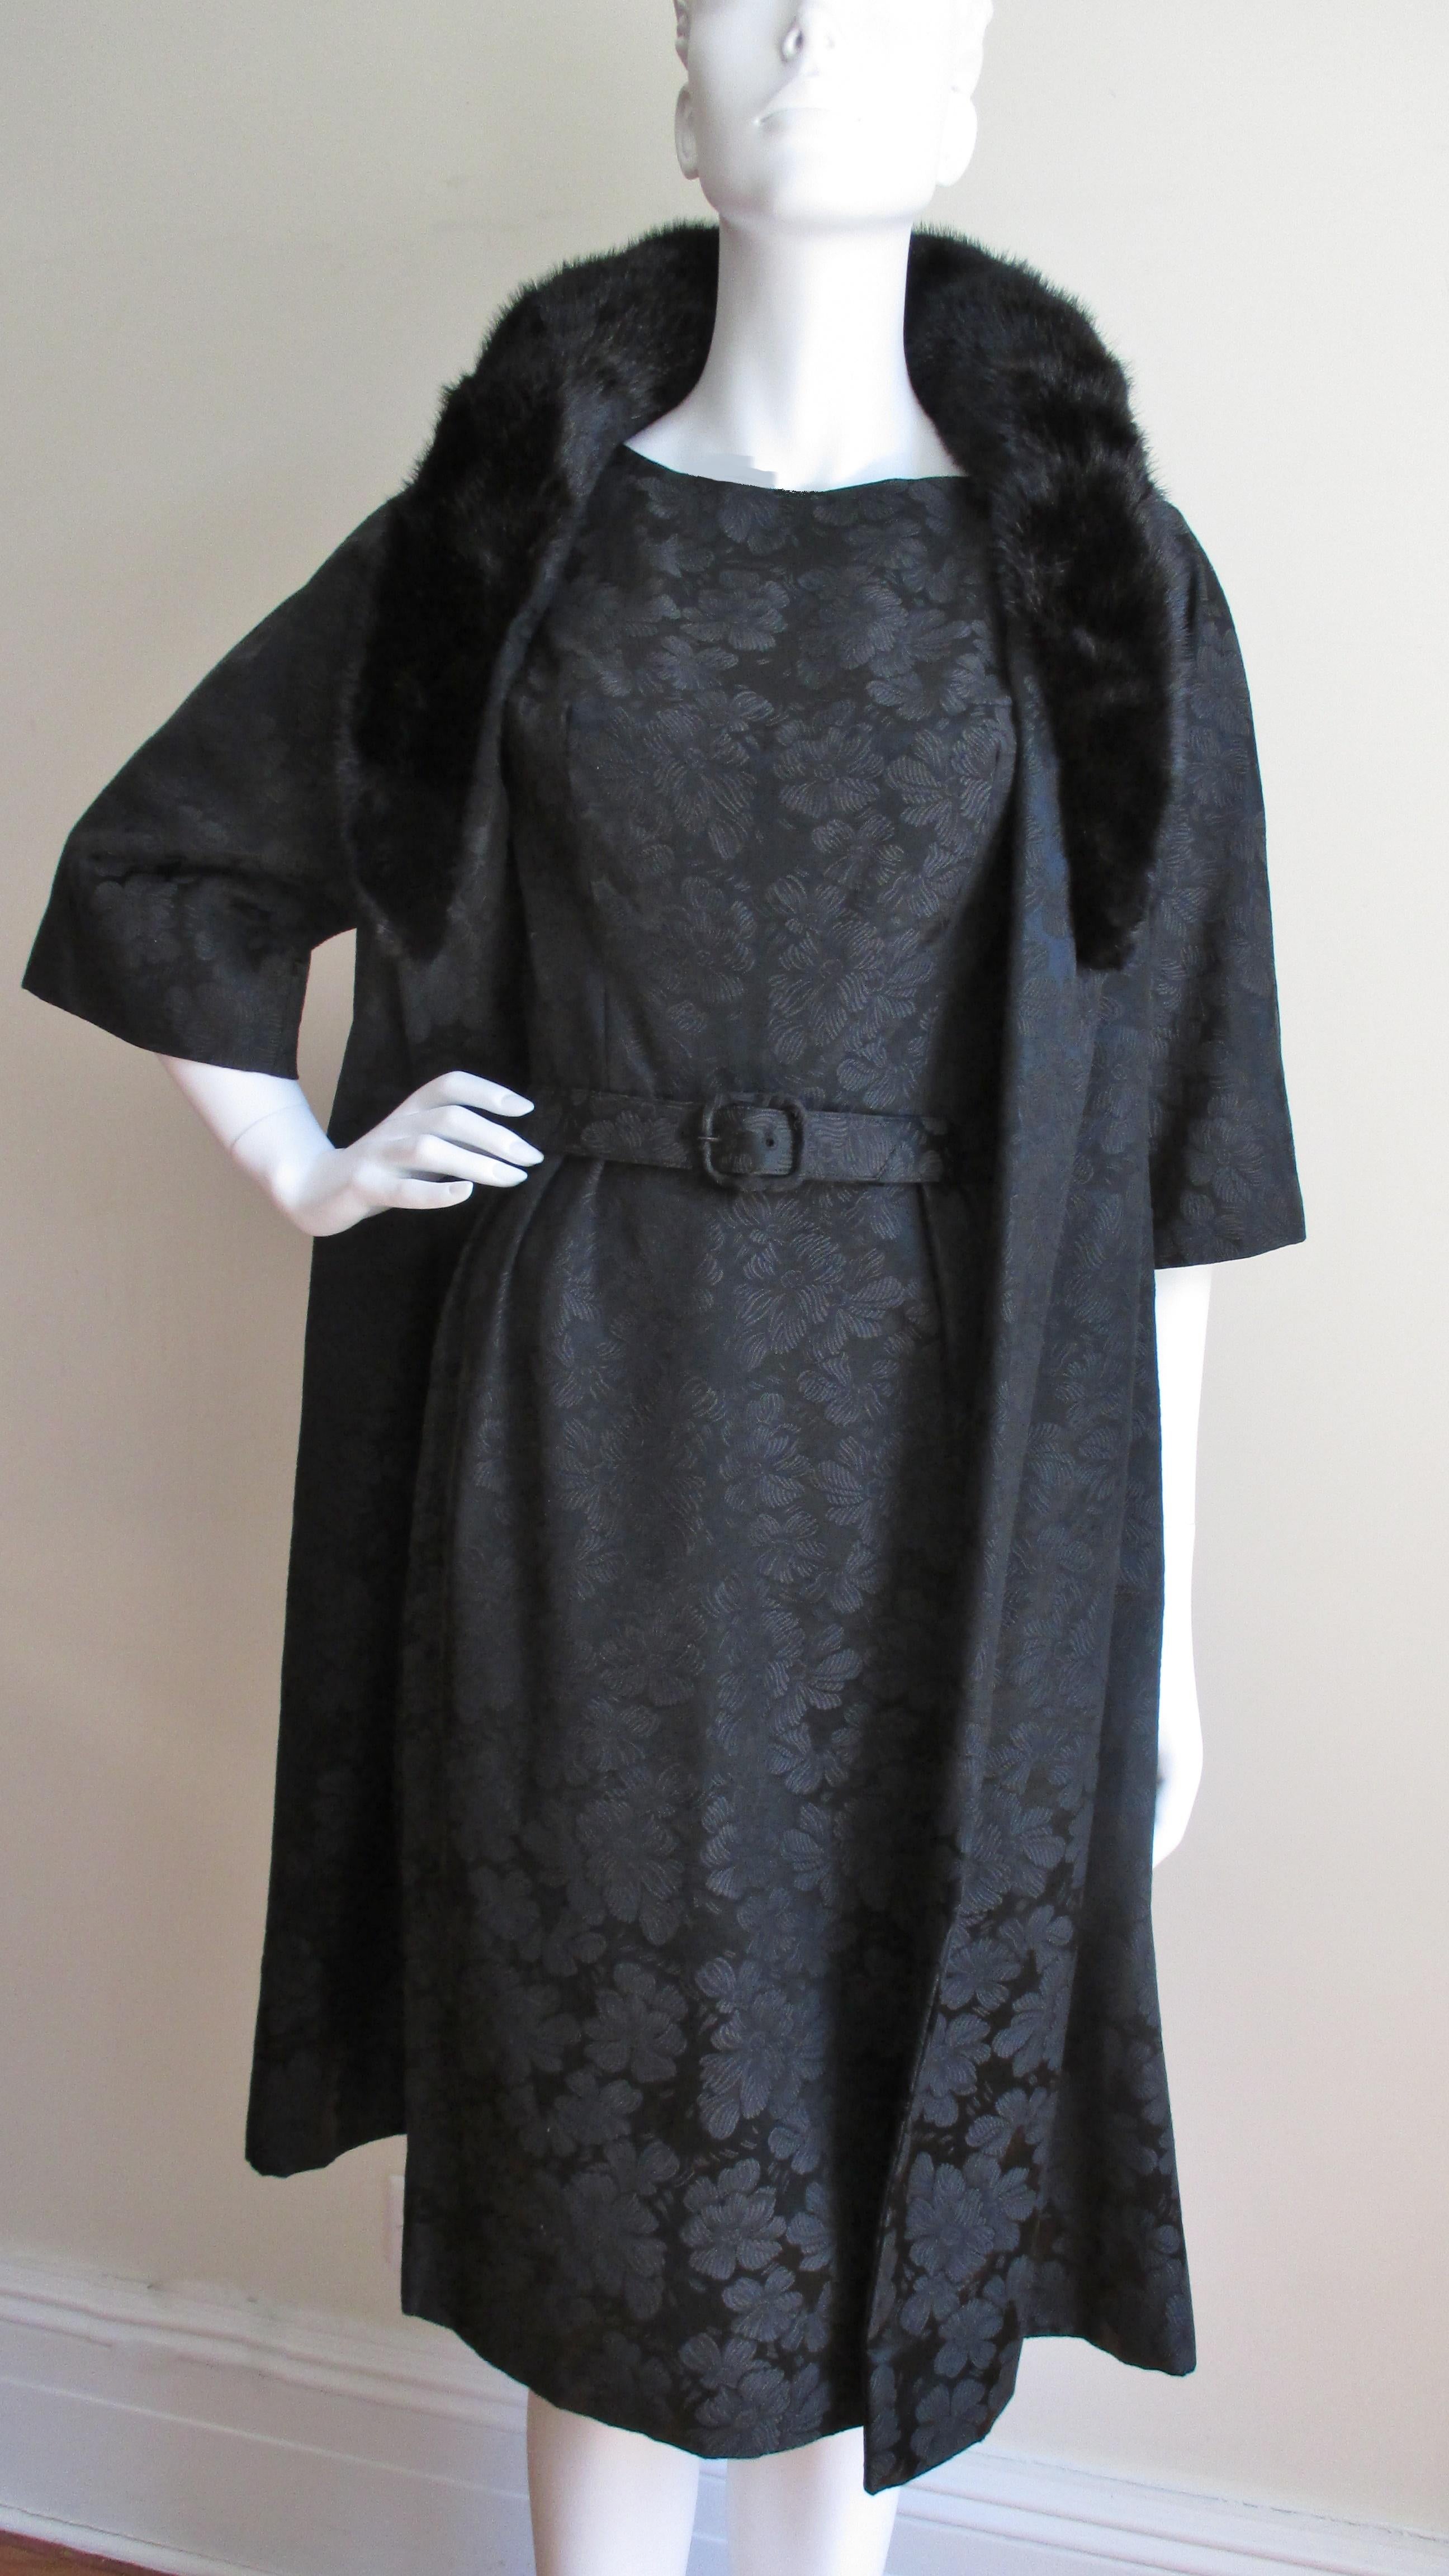 Rare ensemble robe et manteau neuf des années 1950 de Lillie Rubin dans un damas de soie noire à motifs floraux. La robe est semi-fixe avec une ceinture assortie, un décolleté bateau et une jupe droite. Le manteau à manches raglan et longueur de